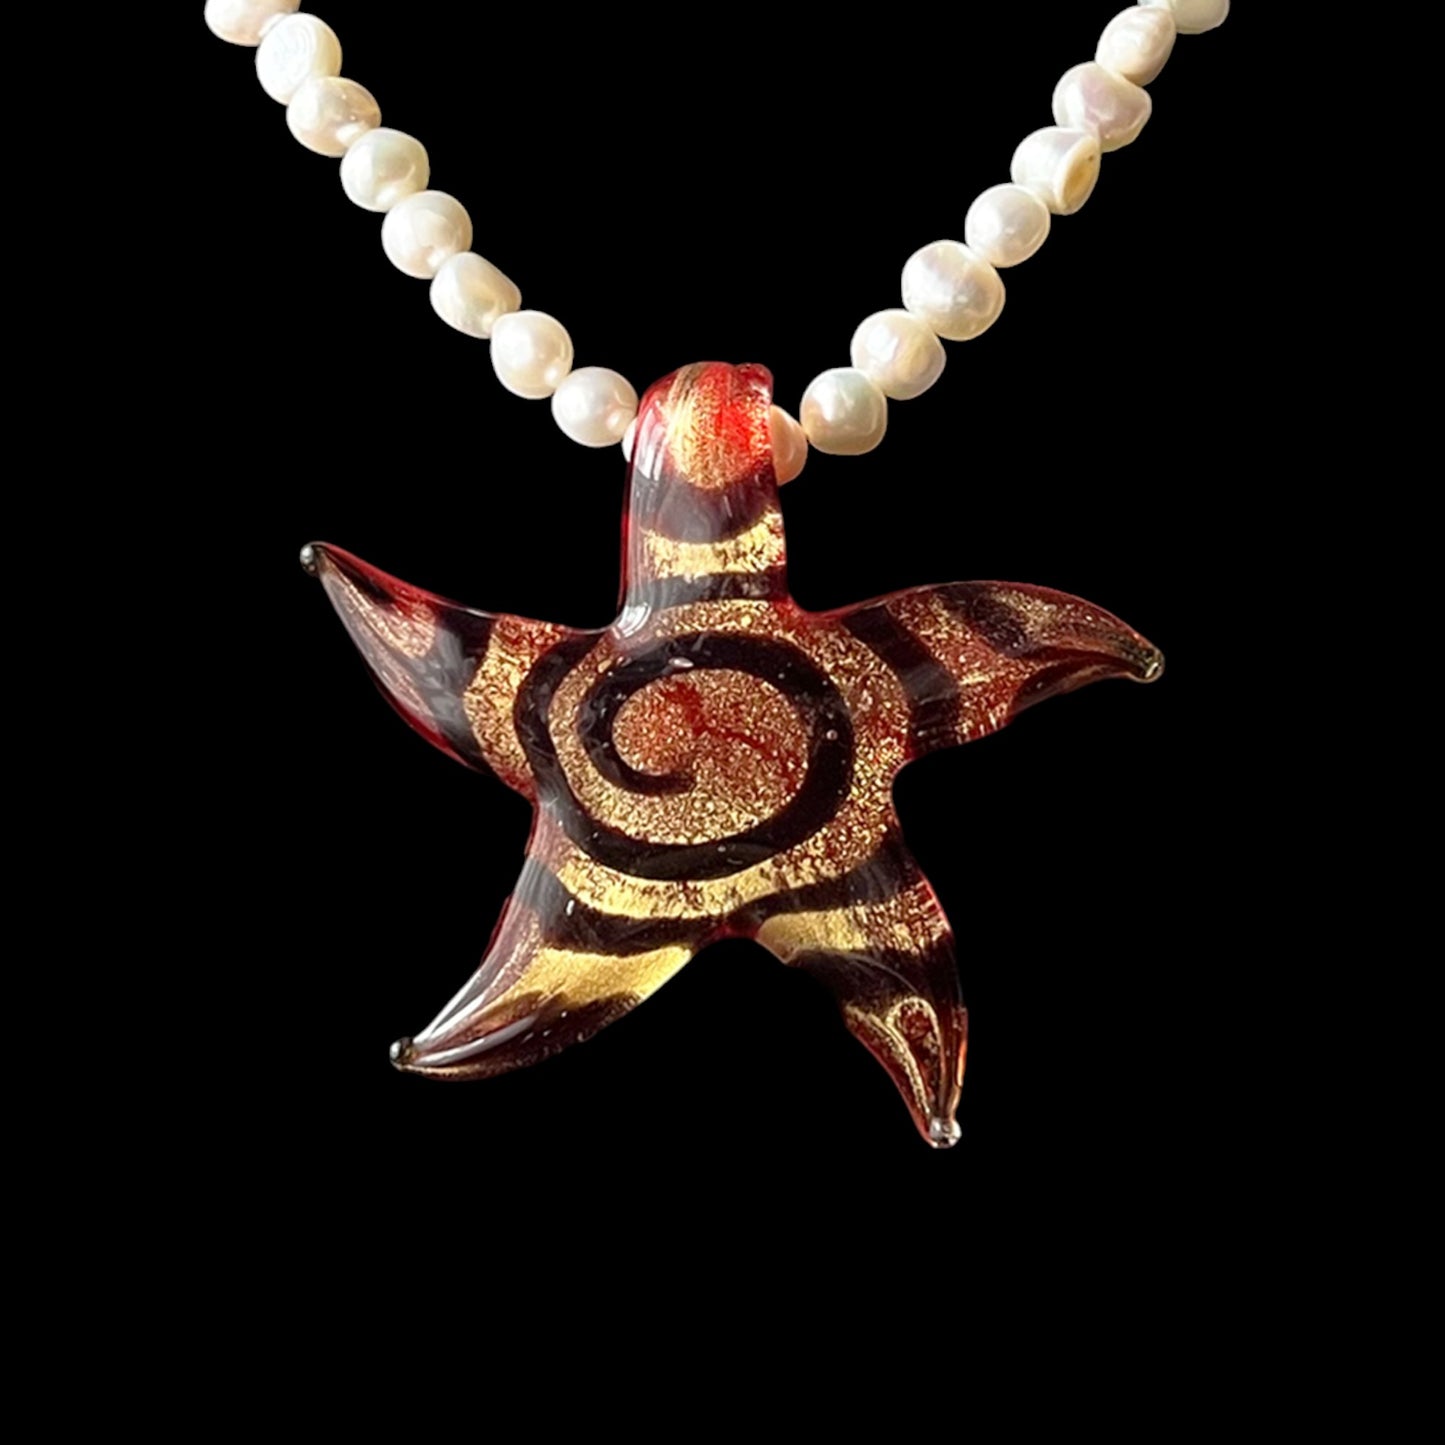 Island Girl Spiral Pearl Necklace - Orange/Black Foil